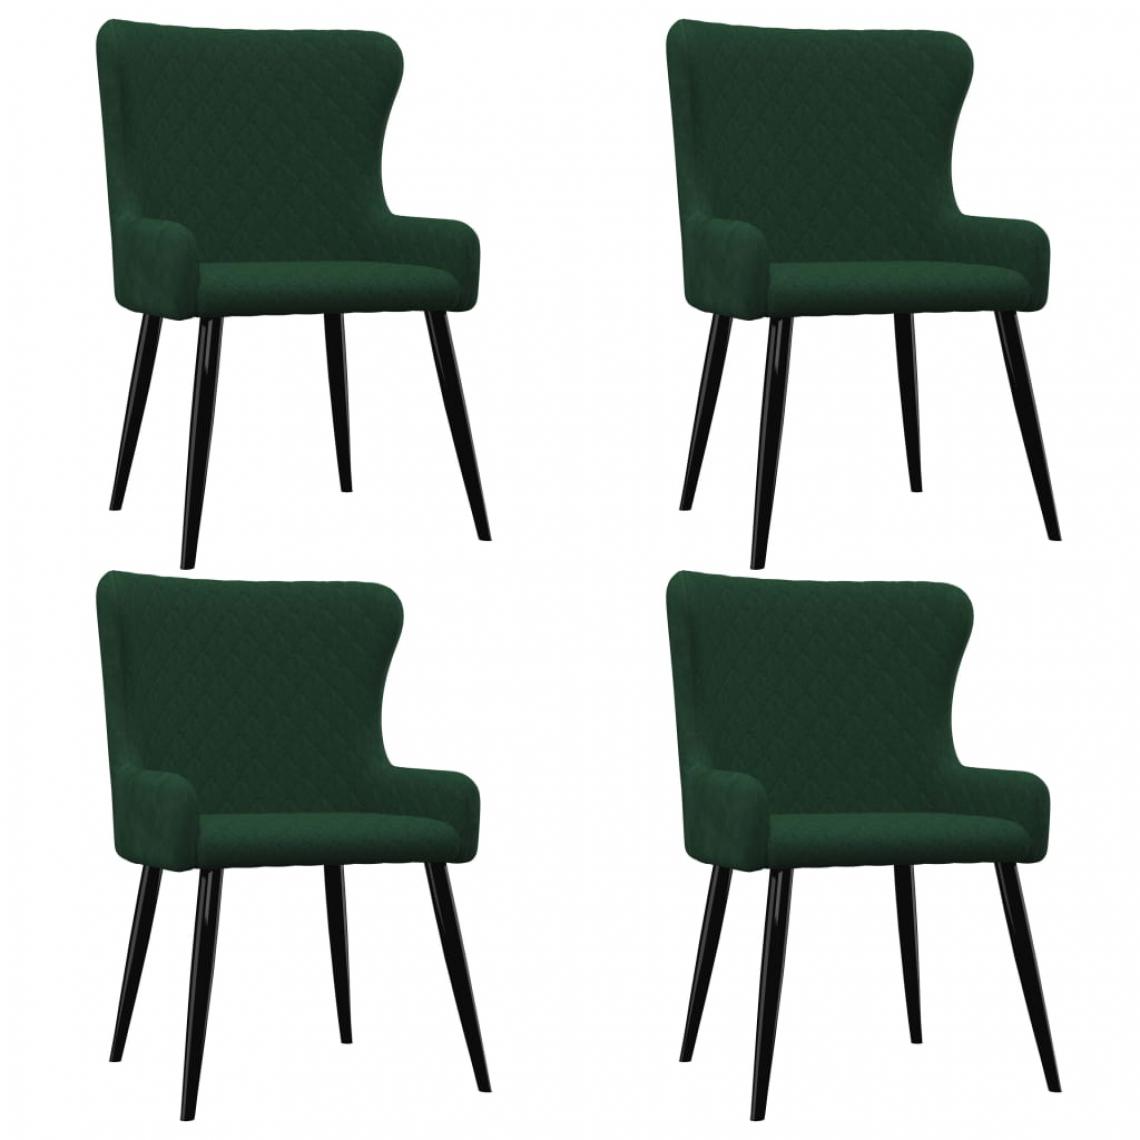 Chunhelife - Chunhelife Chaises de salle à manger 4 pcs Vert Velours - Chaises